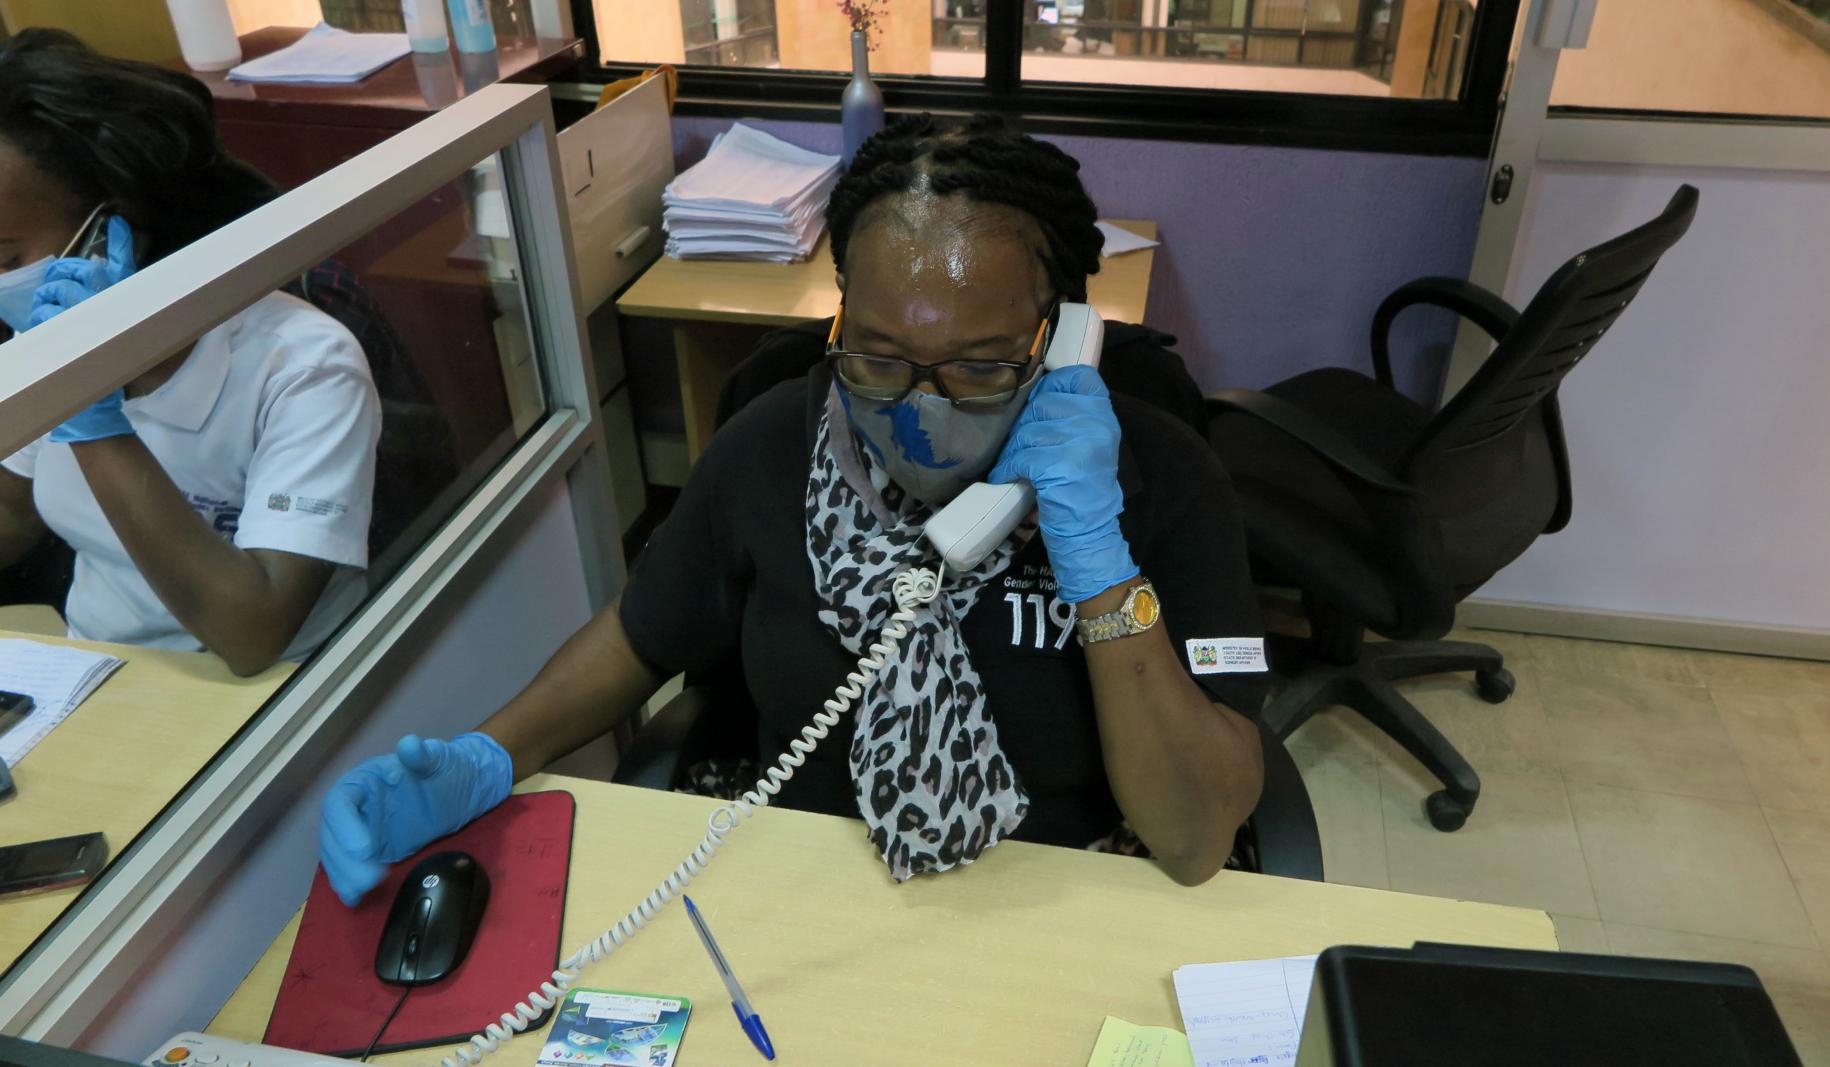 Una representante del centro de llamadas responde a una llamada realizada a la plataforma telefónica del servicio de atención a víctimas. Ella se sienta en un escritorio y usa una mascarilla y guantes protectores.